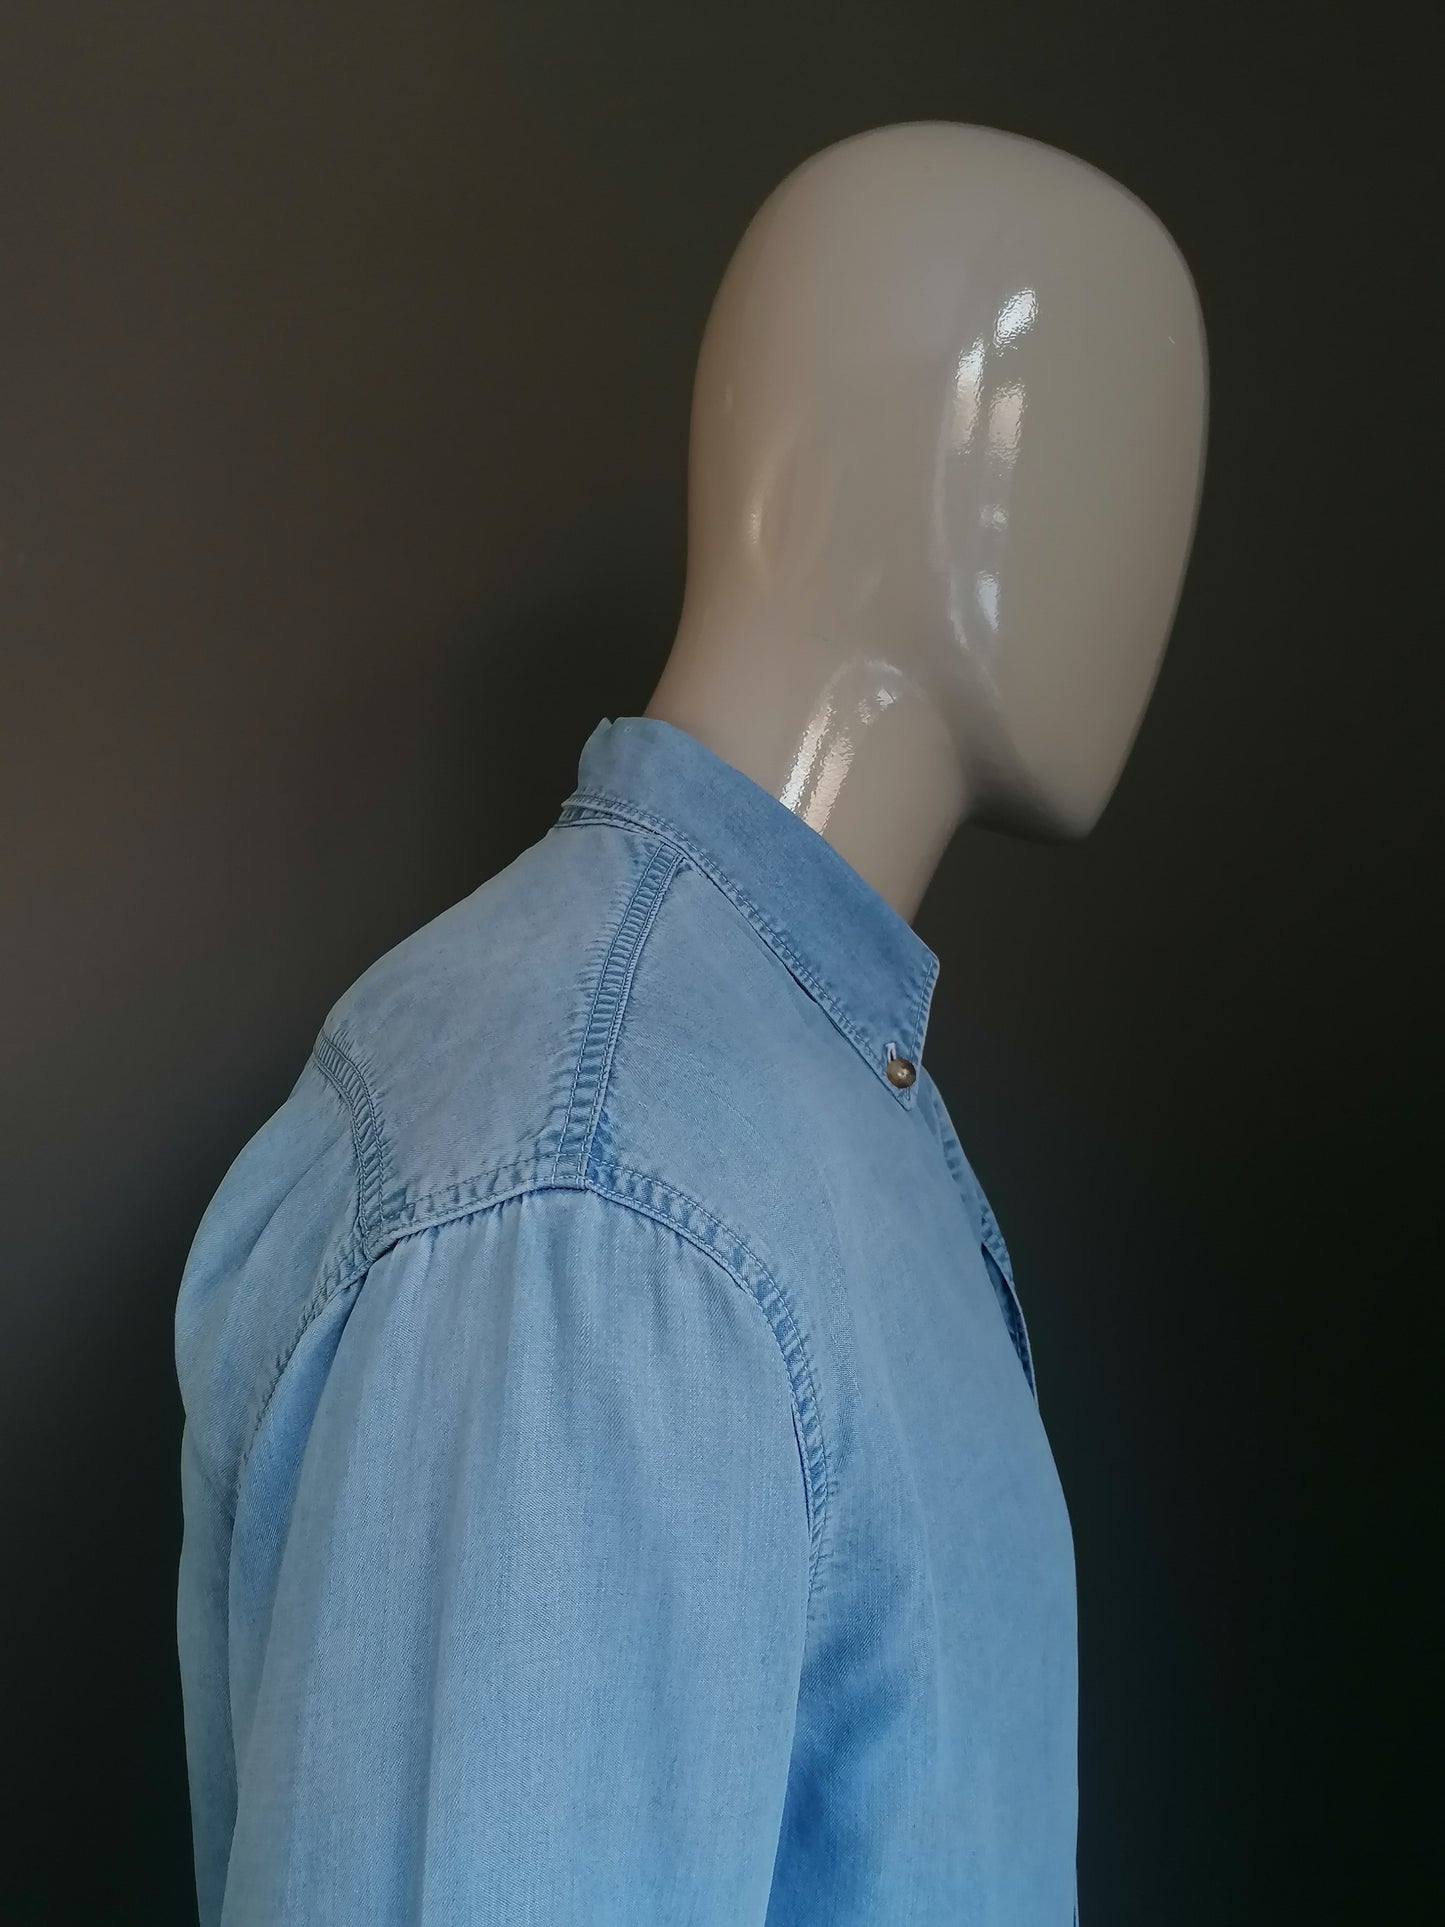 B Elección: camisa de jeans Joop vintage. Azul claro. Tamaño S (de gran tamaño). Pequeño punto atrás.